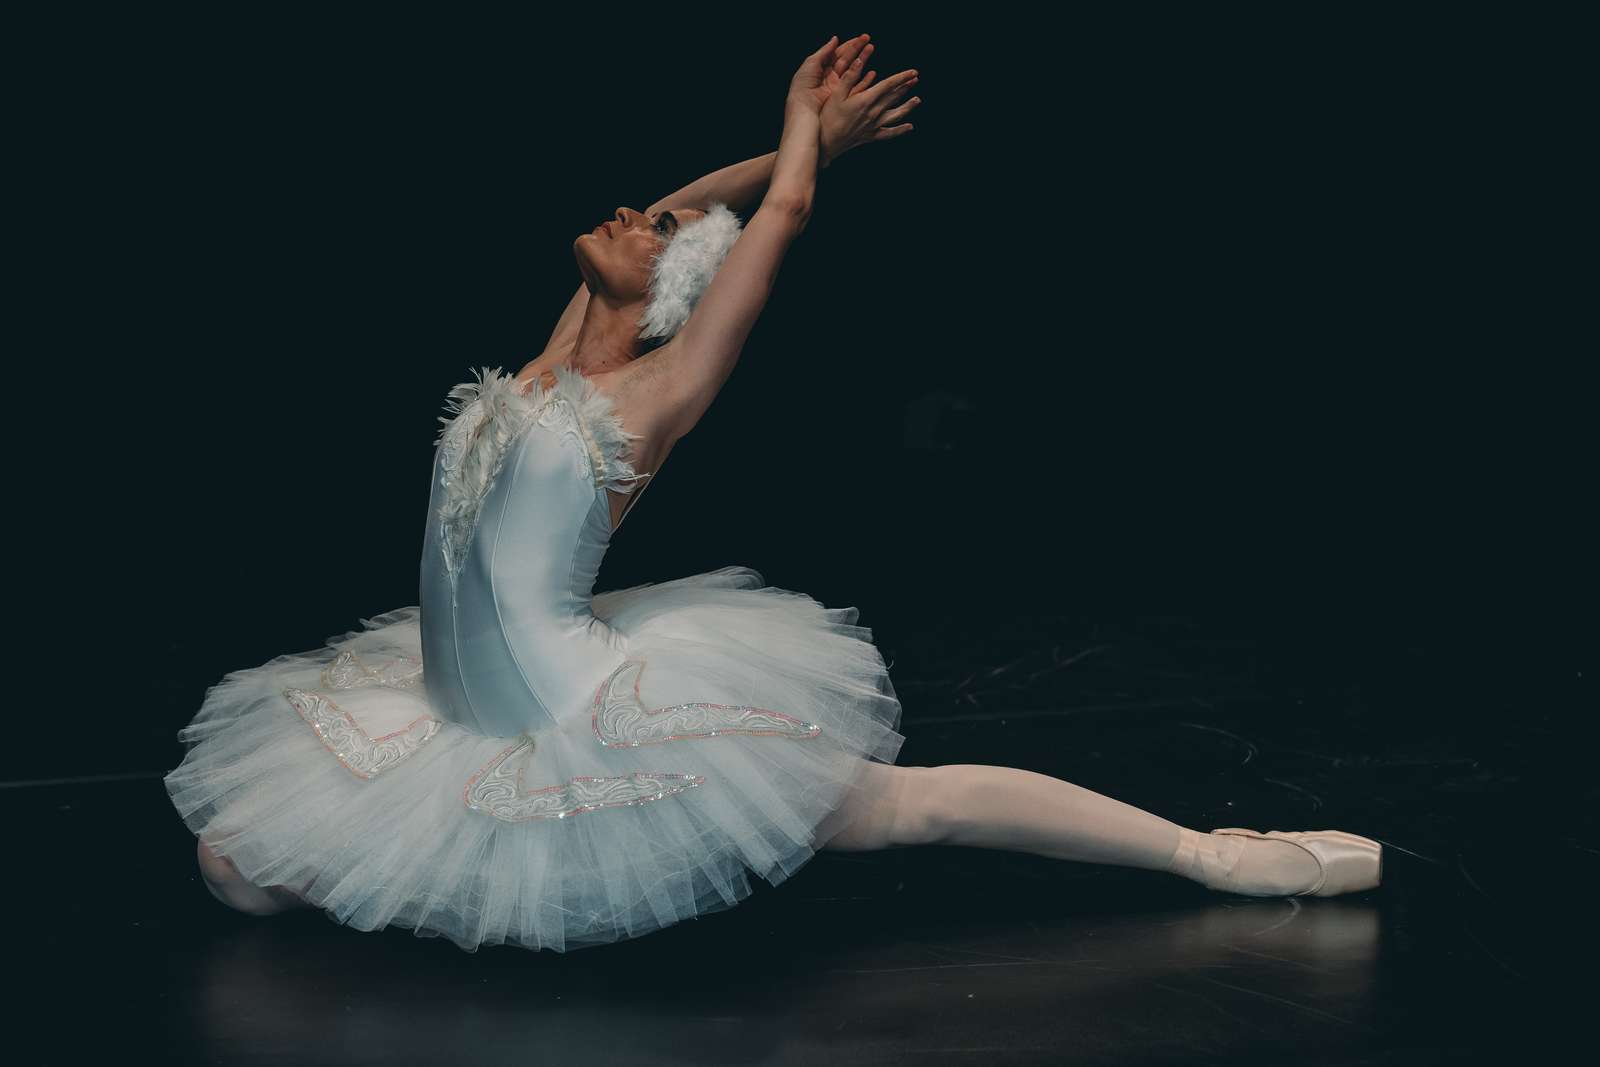 Вечер балета и современного танца пазл онлайн из фото